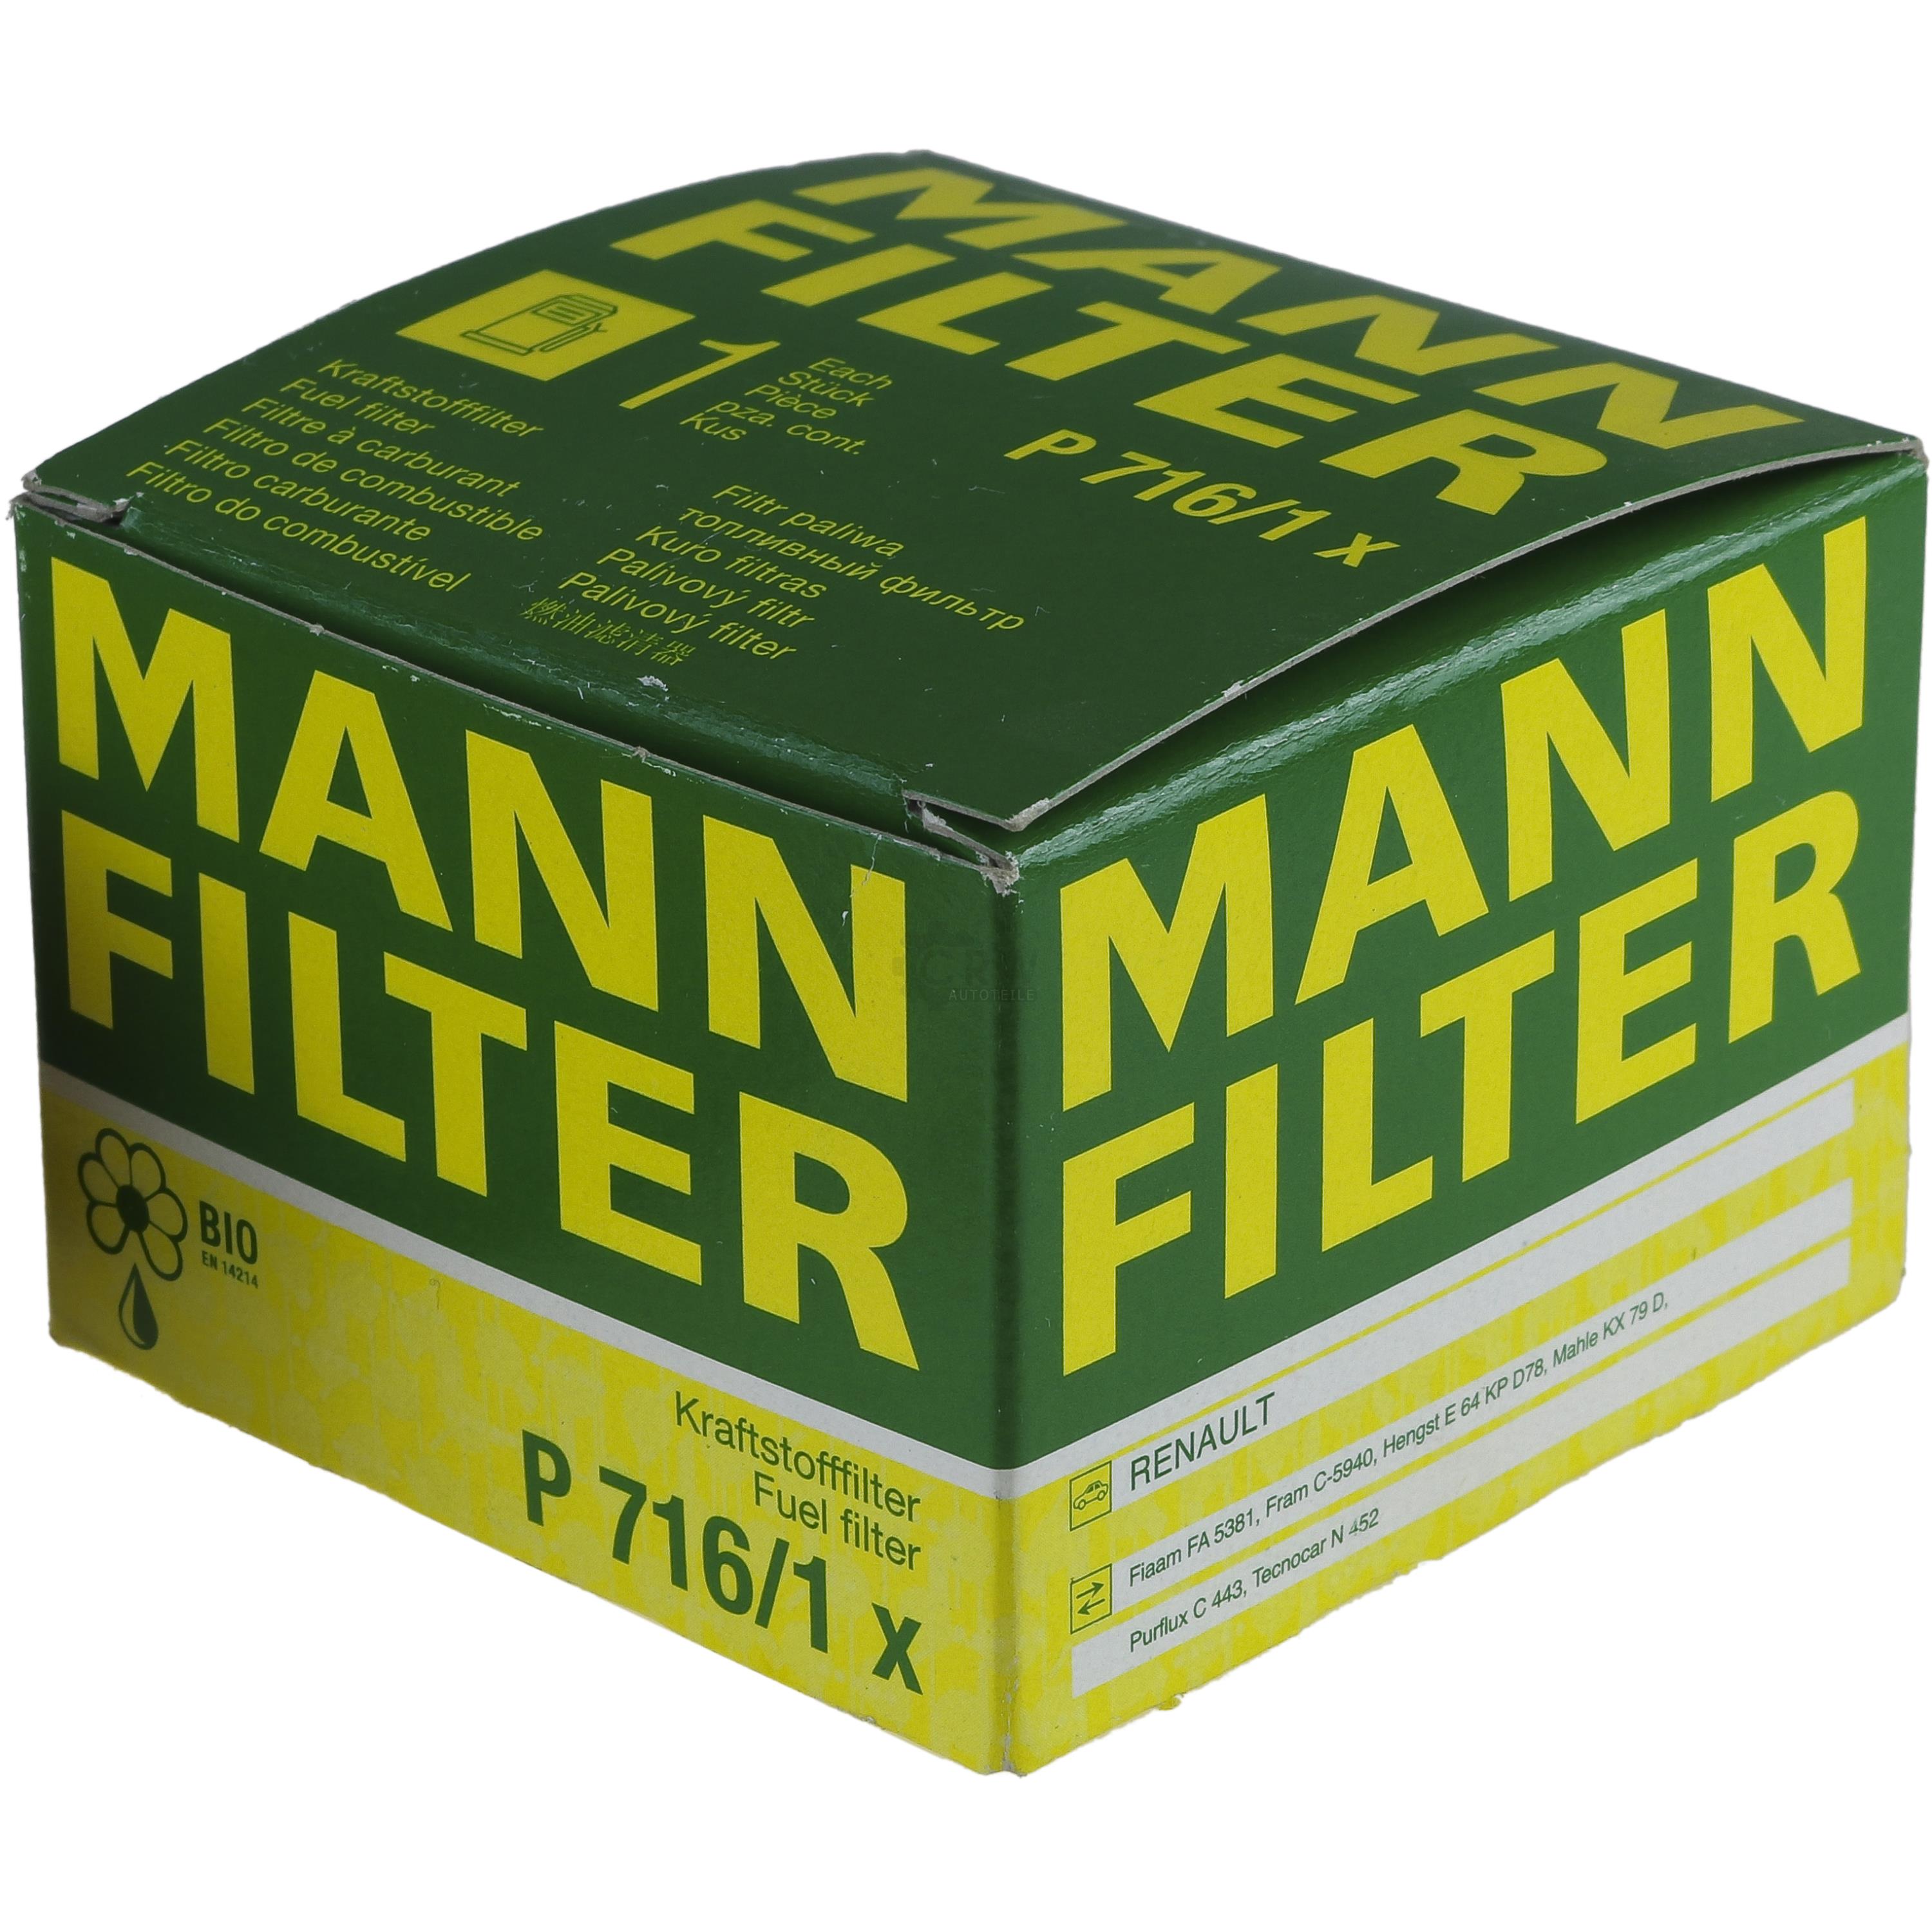 MANN-FILTER Kraftstofffilter P 716/1 x Fuel Filter